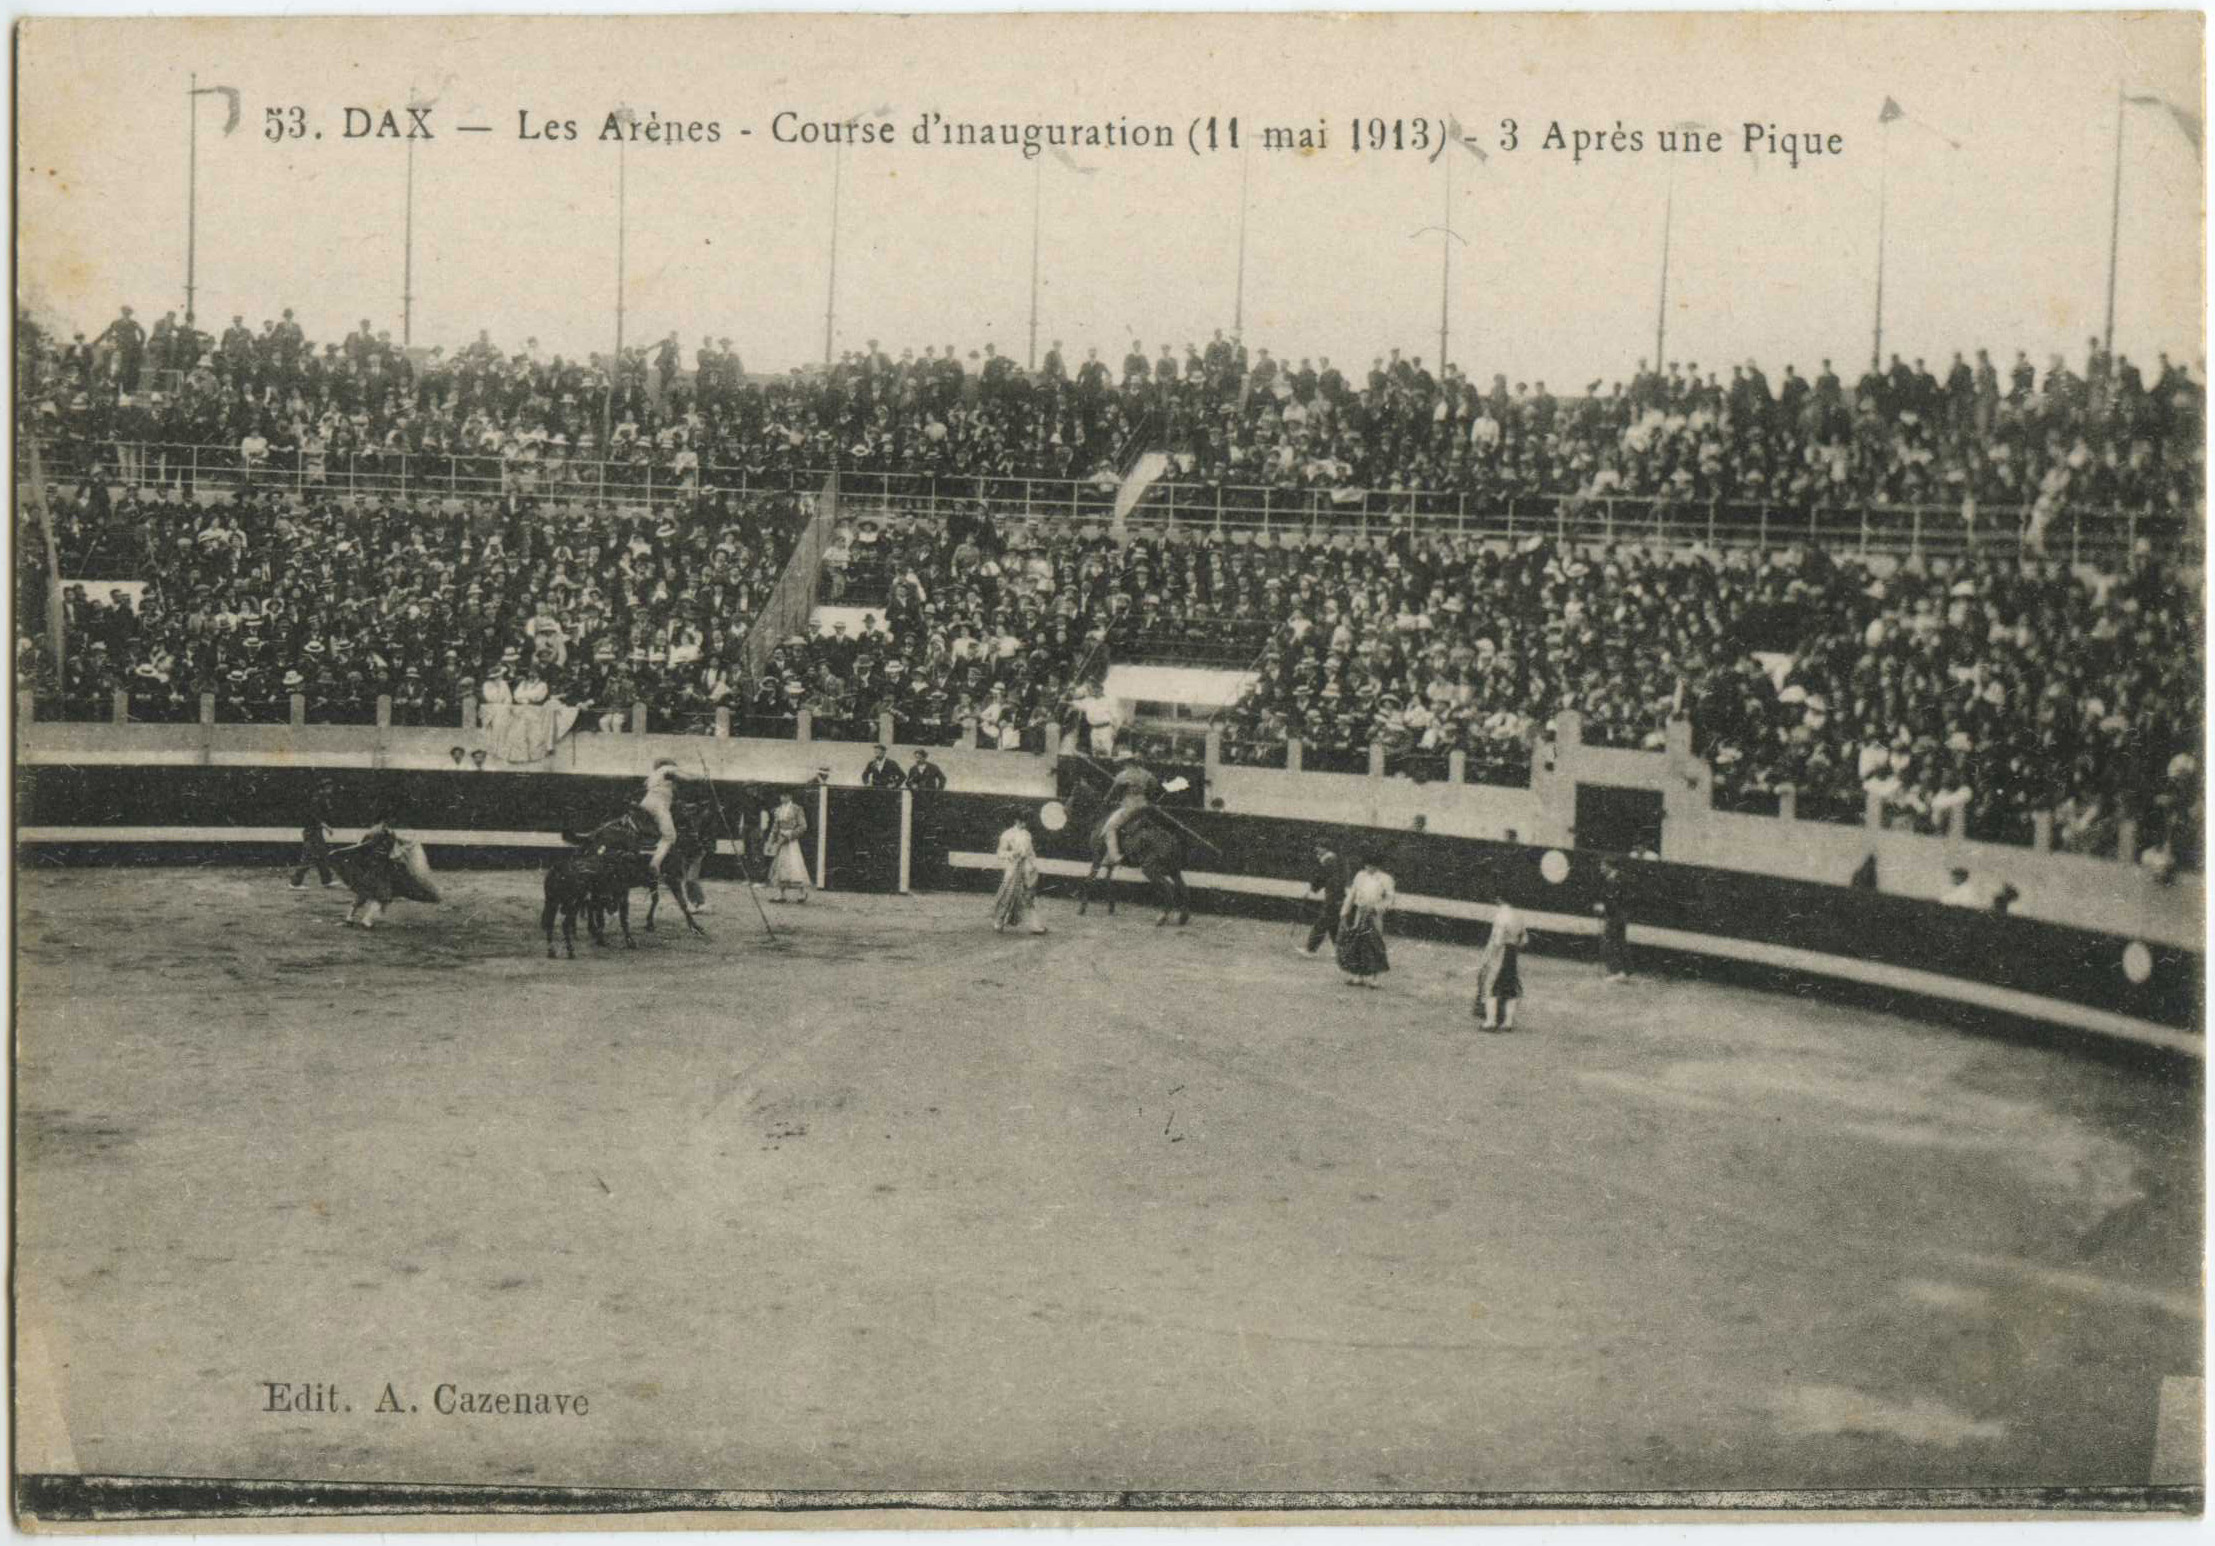 Dax - Les Arènes - Course d'inauguration (11 mai 1913) - Après une Pique